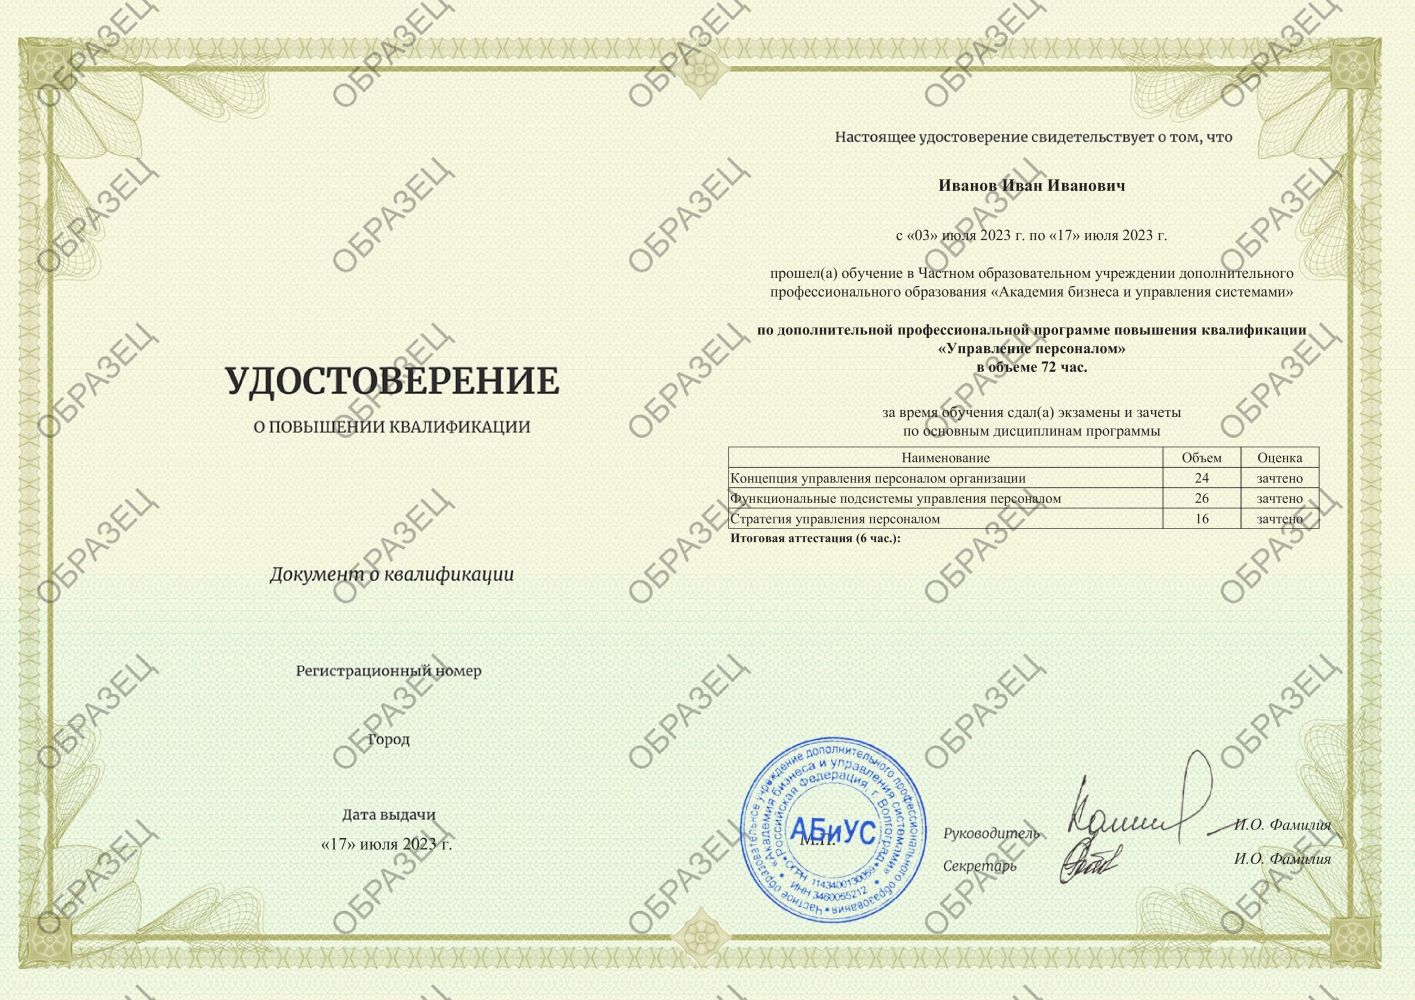 Удостоверение Управление персоналом 72 часа 4188 руб.